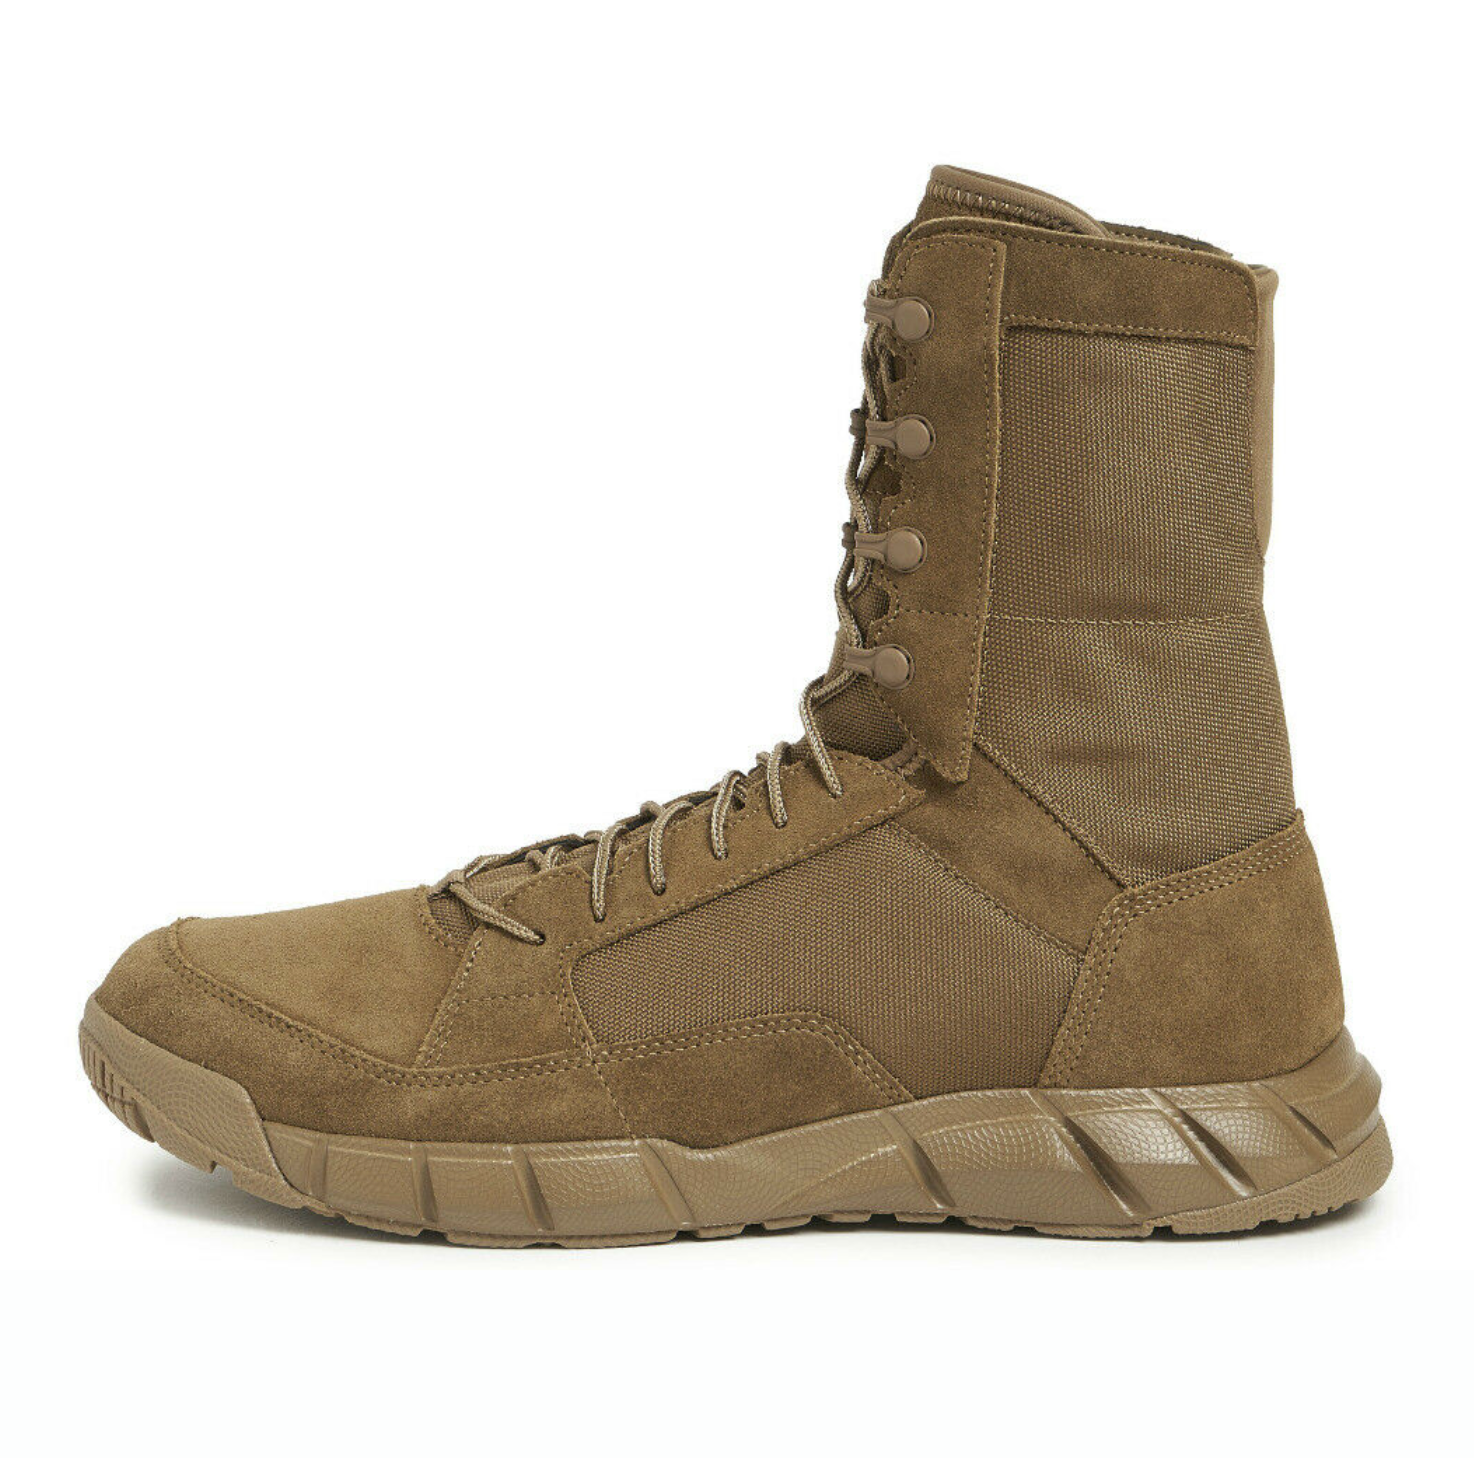 Oakley Light Assault 2 Coyote Leather Boots 11188-86W – Footwear